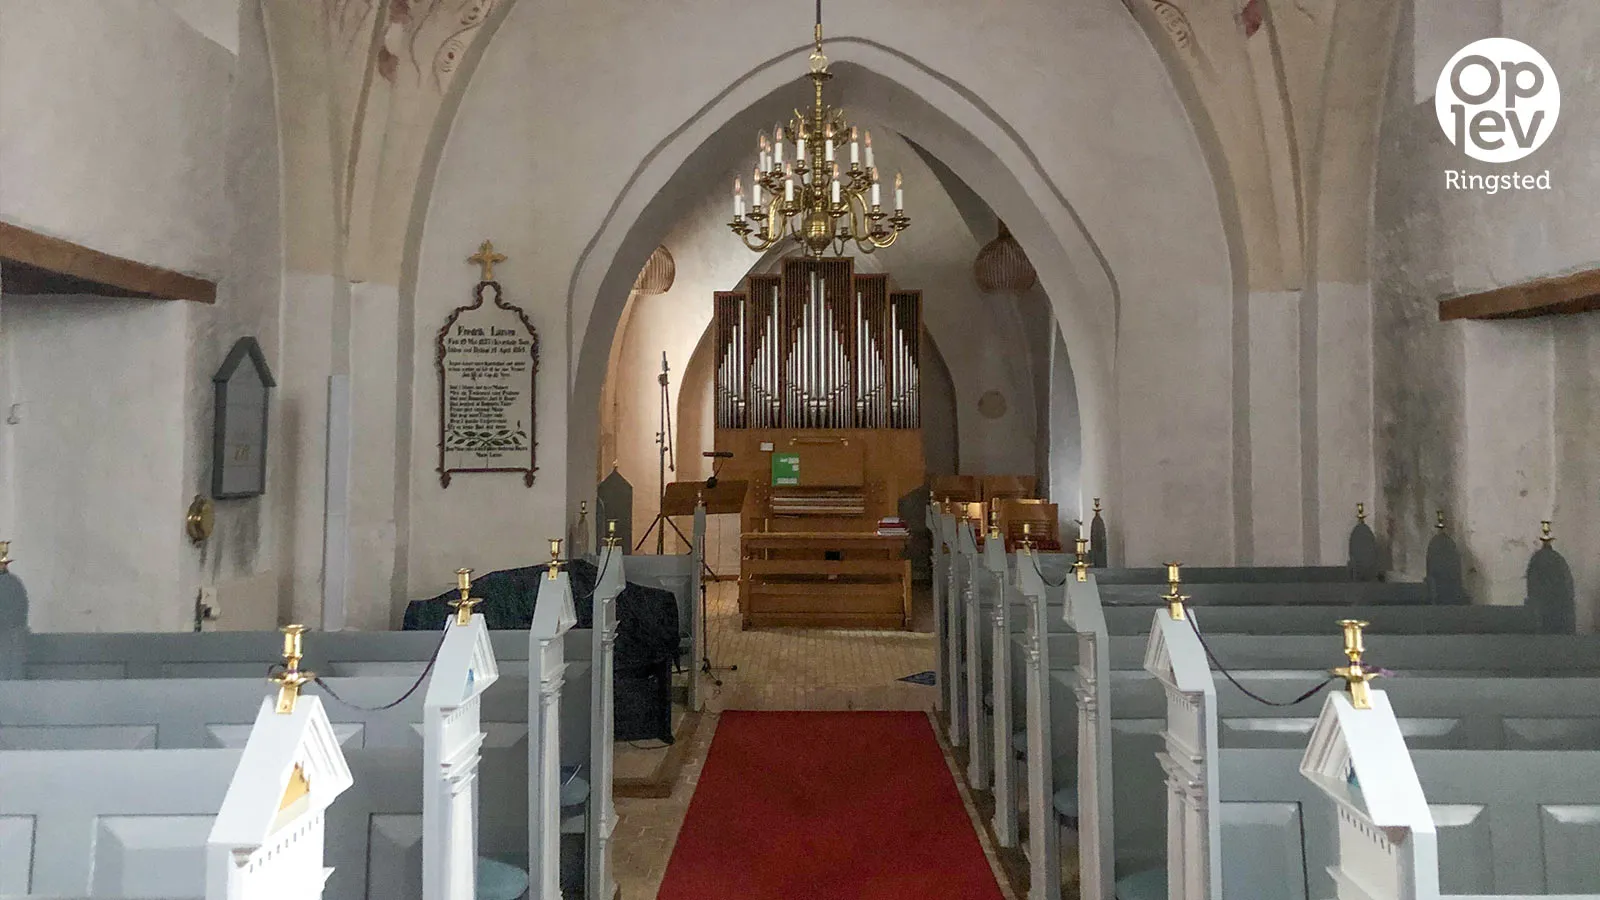 Kværkeby Kirke